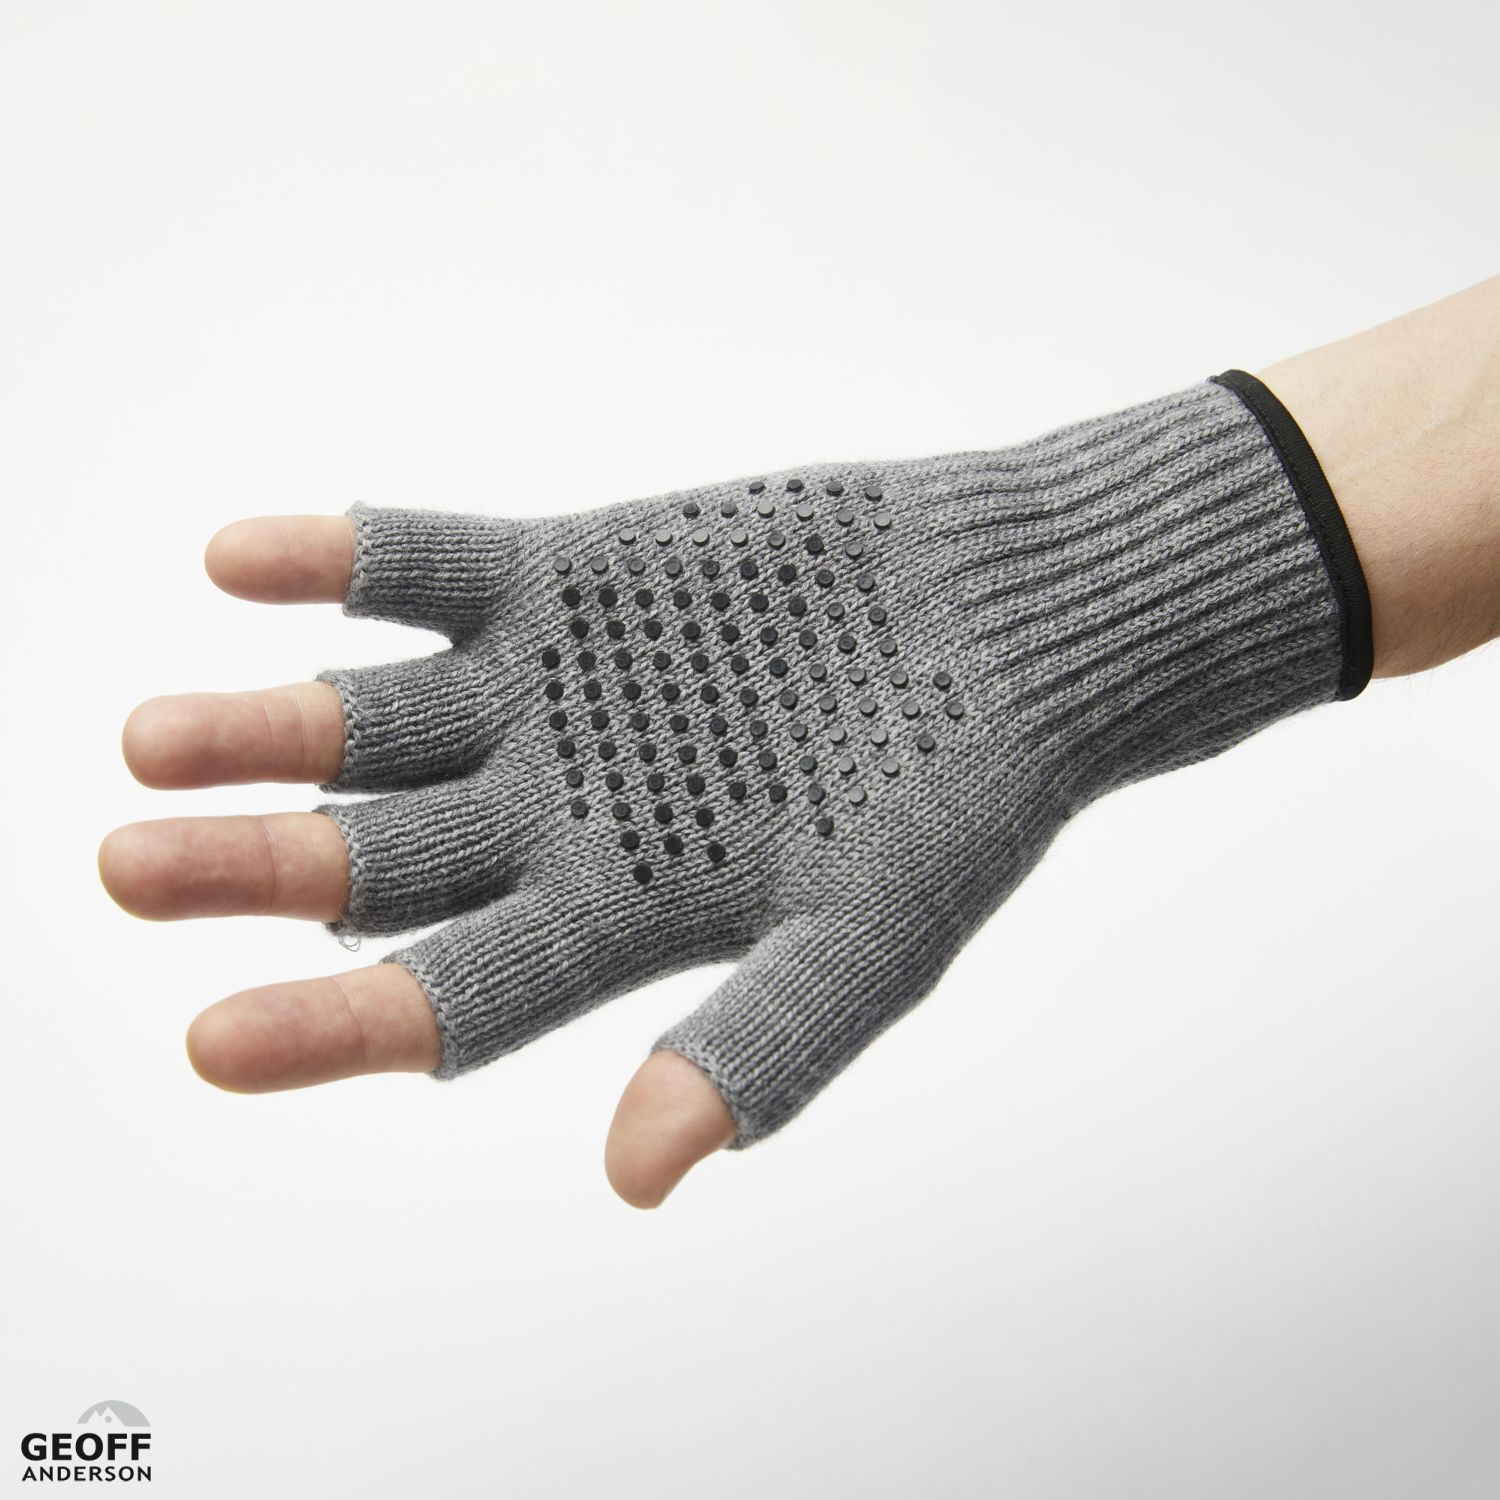 Geoff Anderson Wizwool Corespun Fingerless Glove